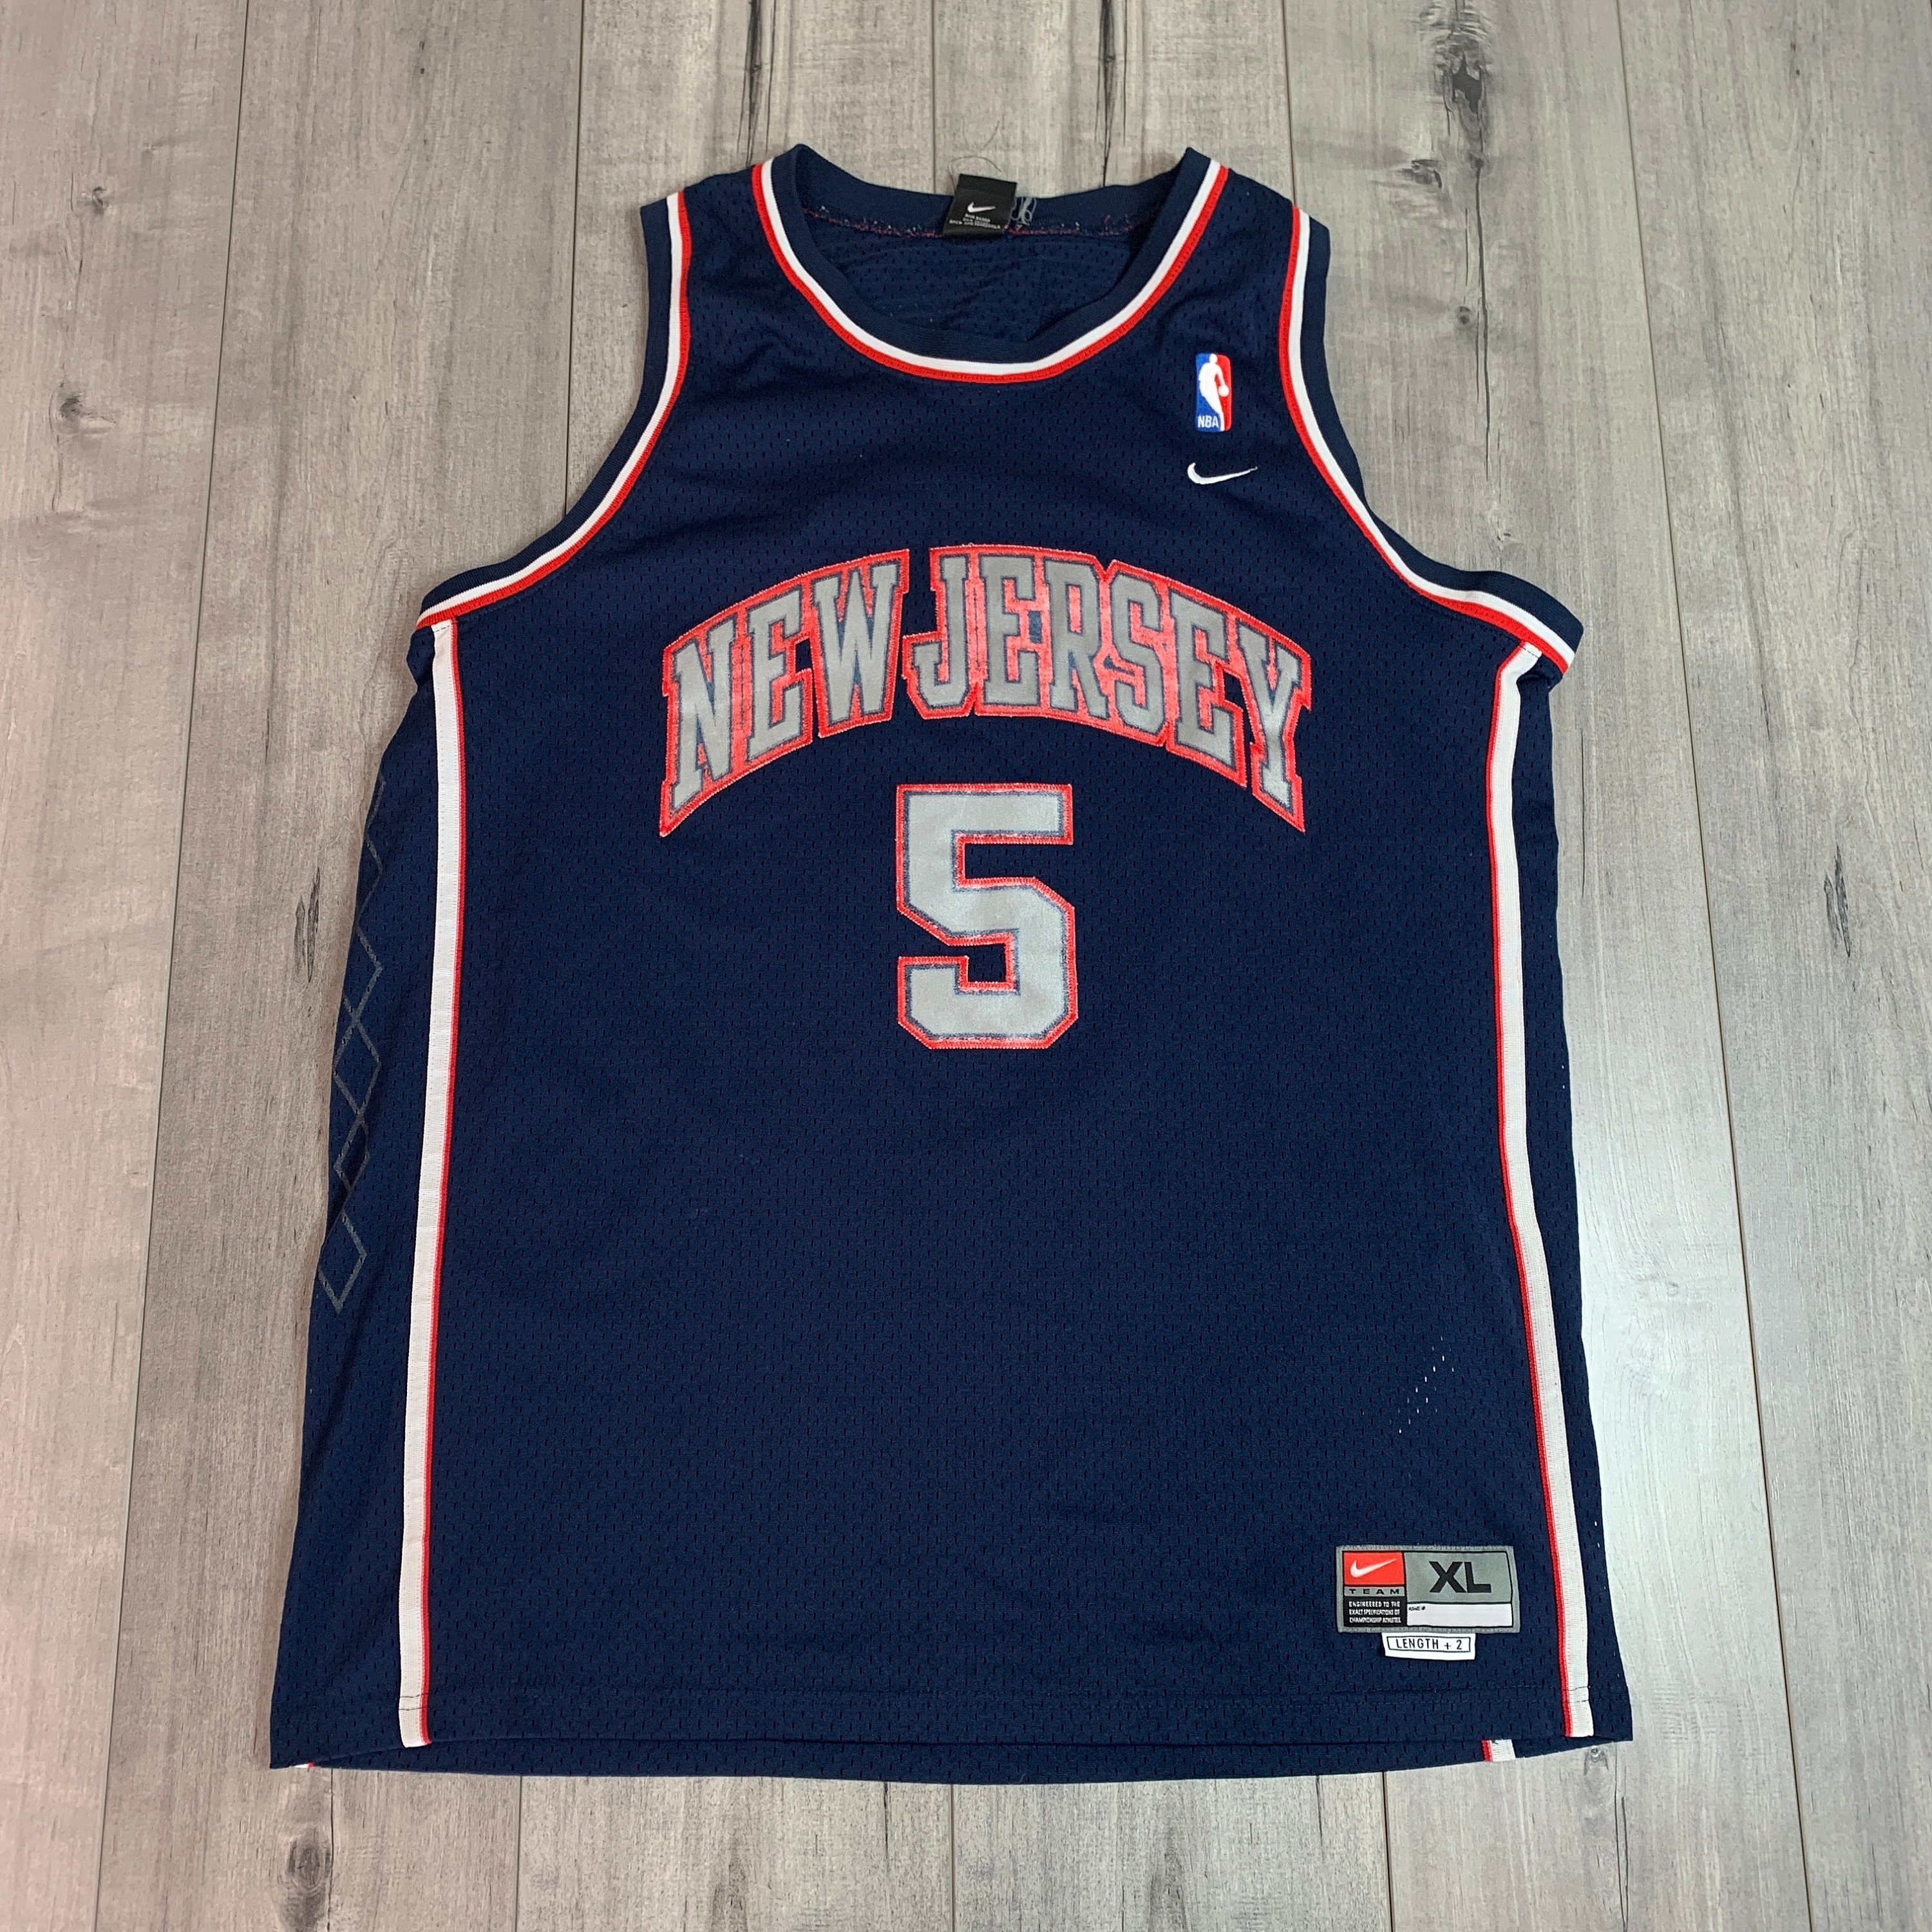 Áo thể thao Jason Kidd New Jersey Nets Nike sẽ khiến bạn chú ý đến sự kết hợp hoàn hảo giữa phong cách và chất lượng của thương hiệu Nike. Với kiểu dáng đẹp và cảm giác thoải mái, bạn sẽ luôn tự tin khi mặc áo này.